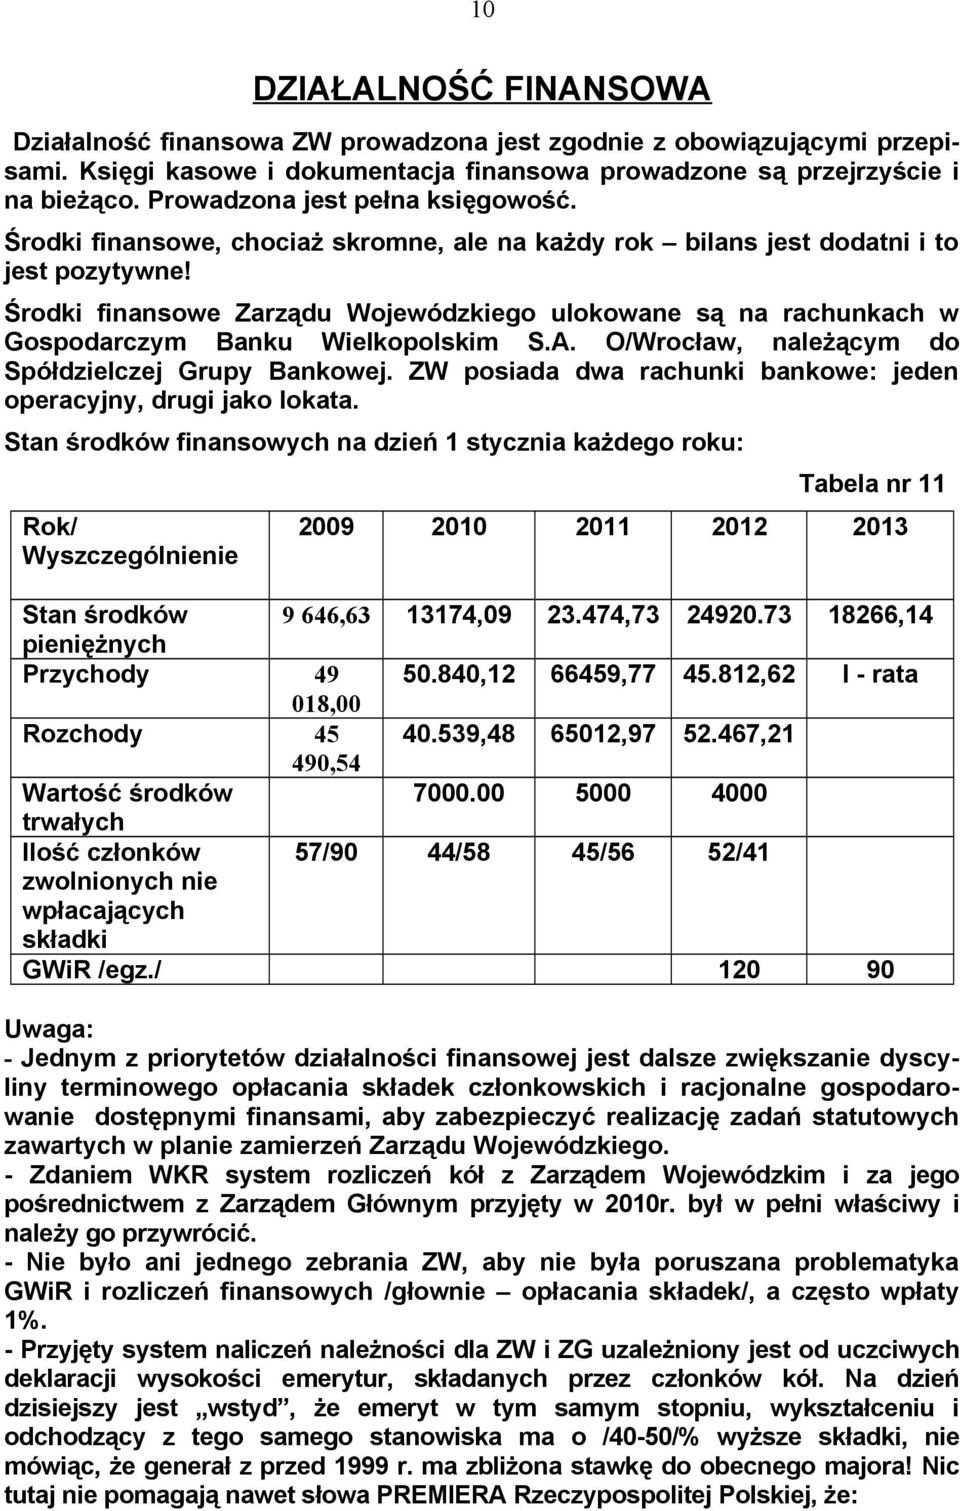 Środki finansowe Zarządu Wojewódzkiego ulokowane są na rachunkach w Gospodarczym Banku Wielkopolskim S.A. O/Wrocław, należącym do Spółdzielczej Grupy Bankowej.